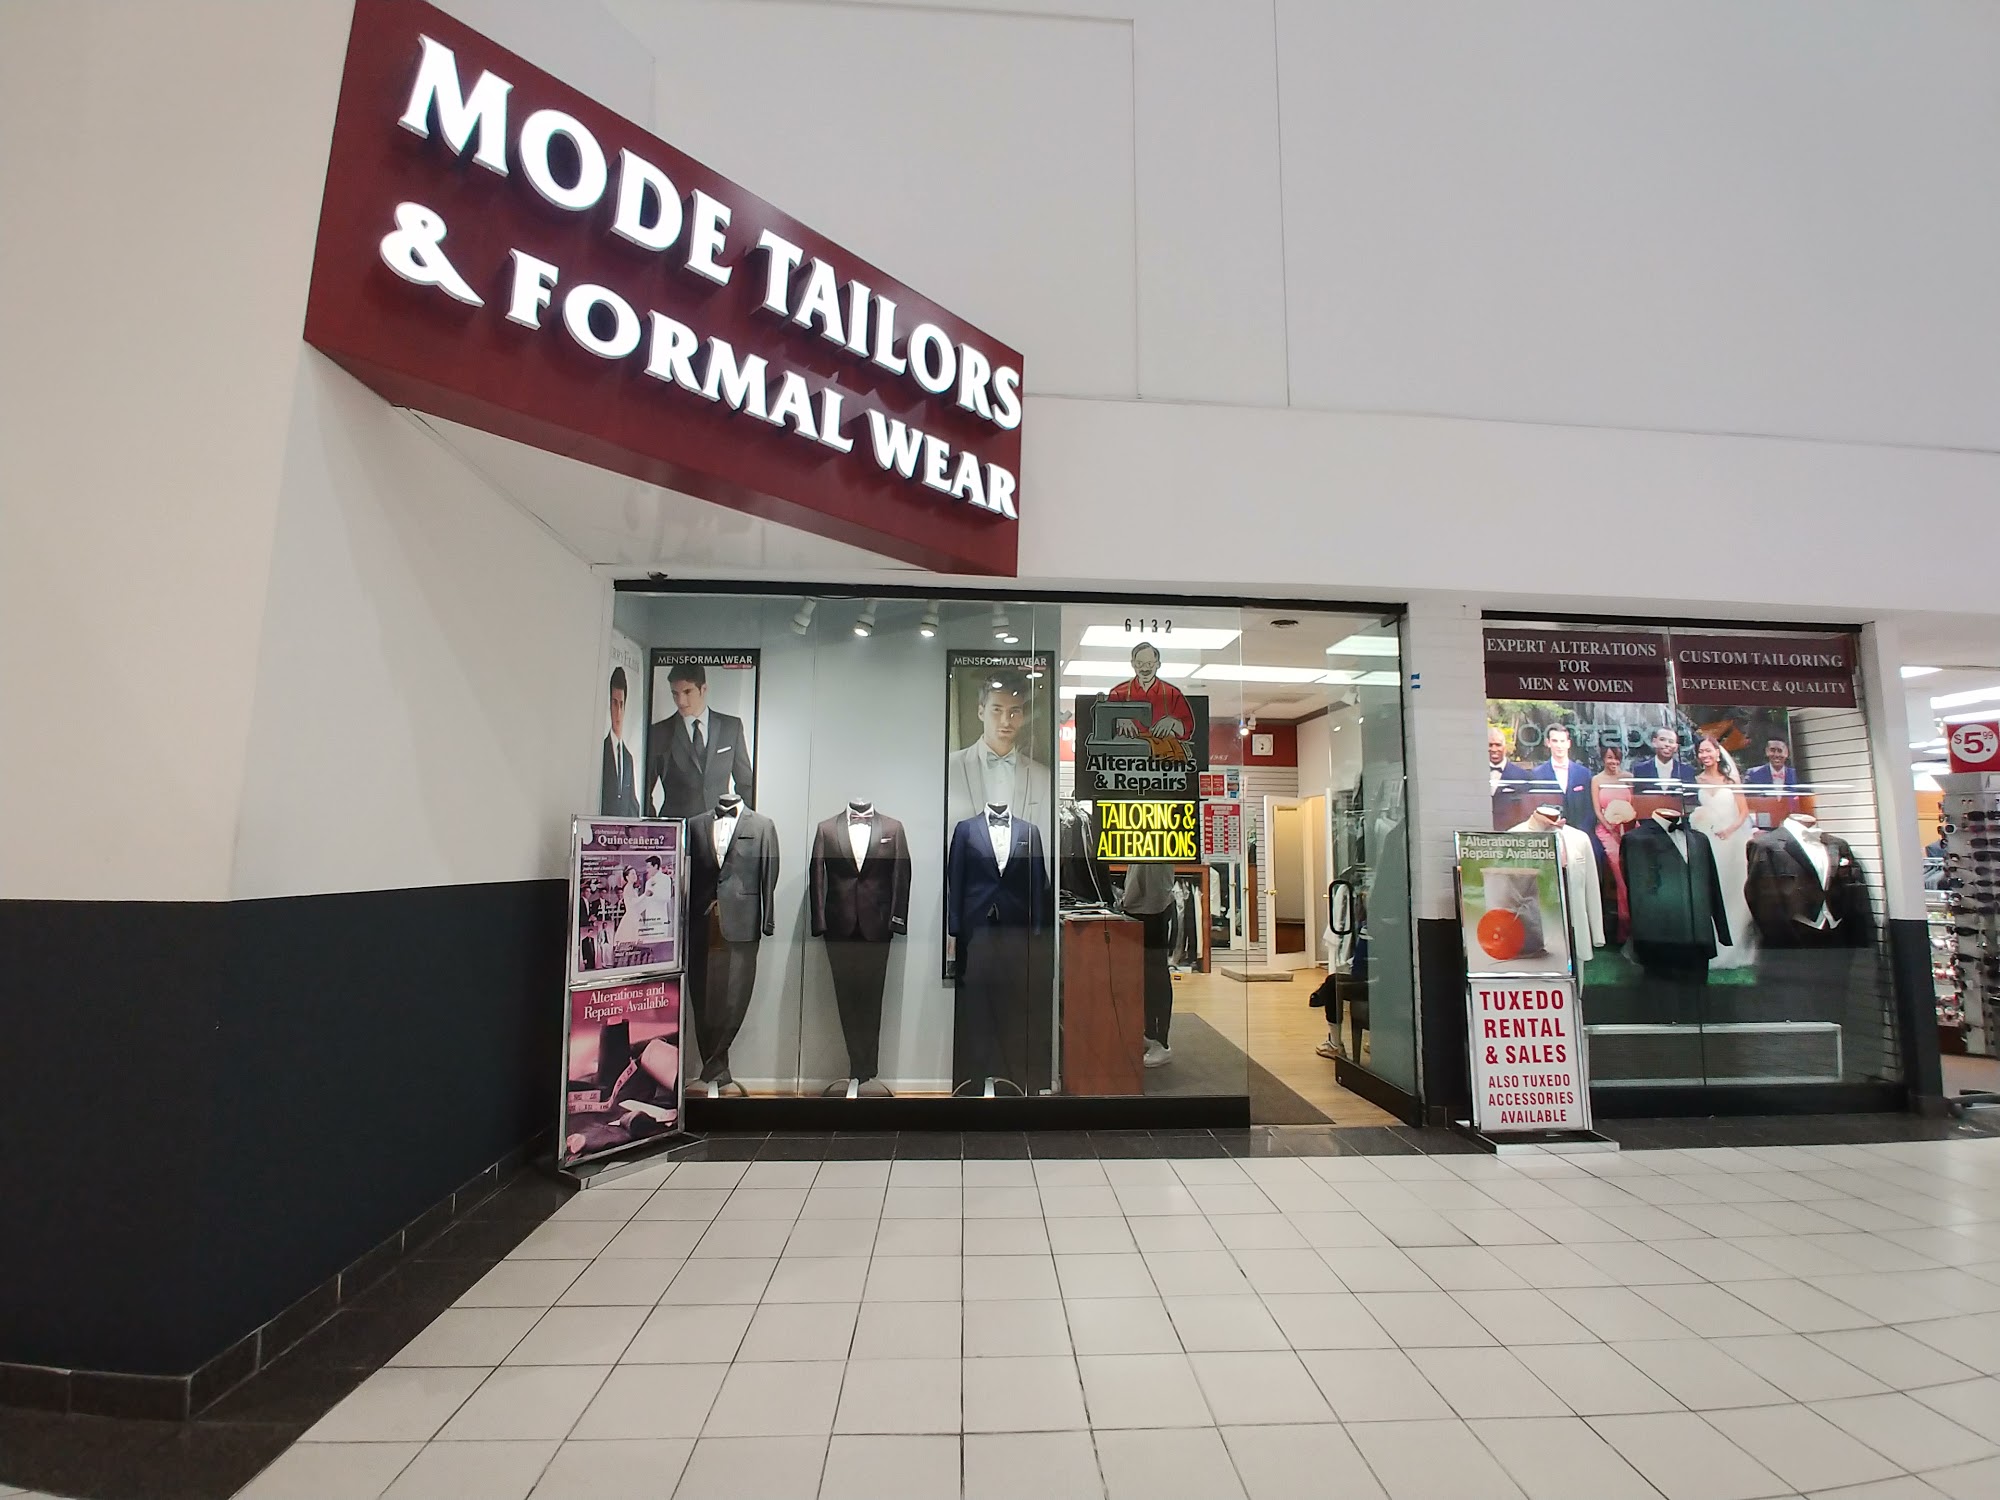 Mode Custom Tailor Shop